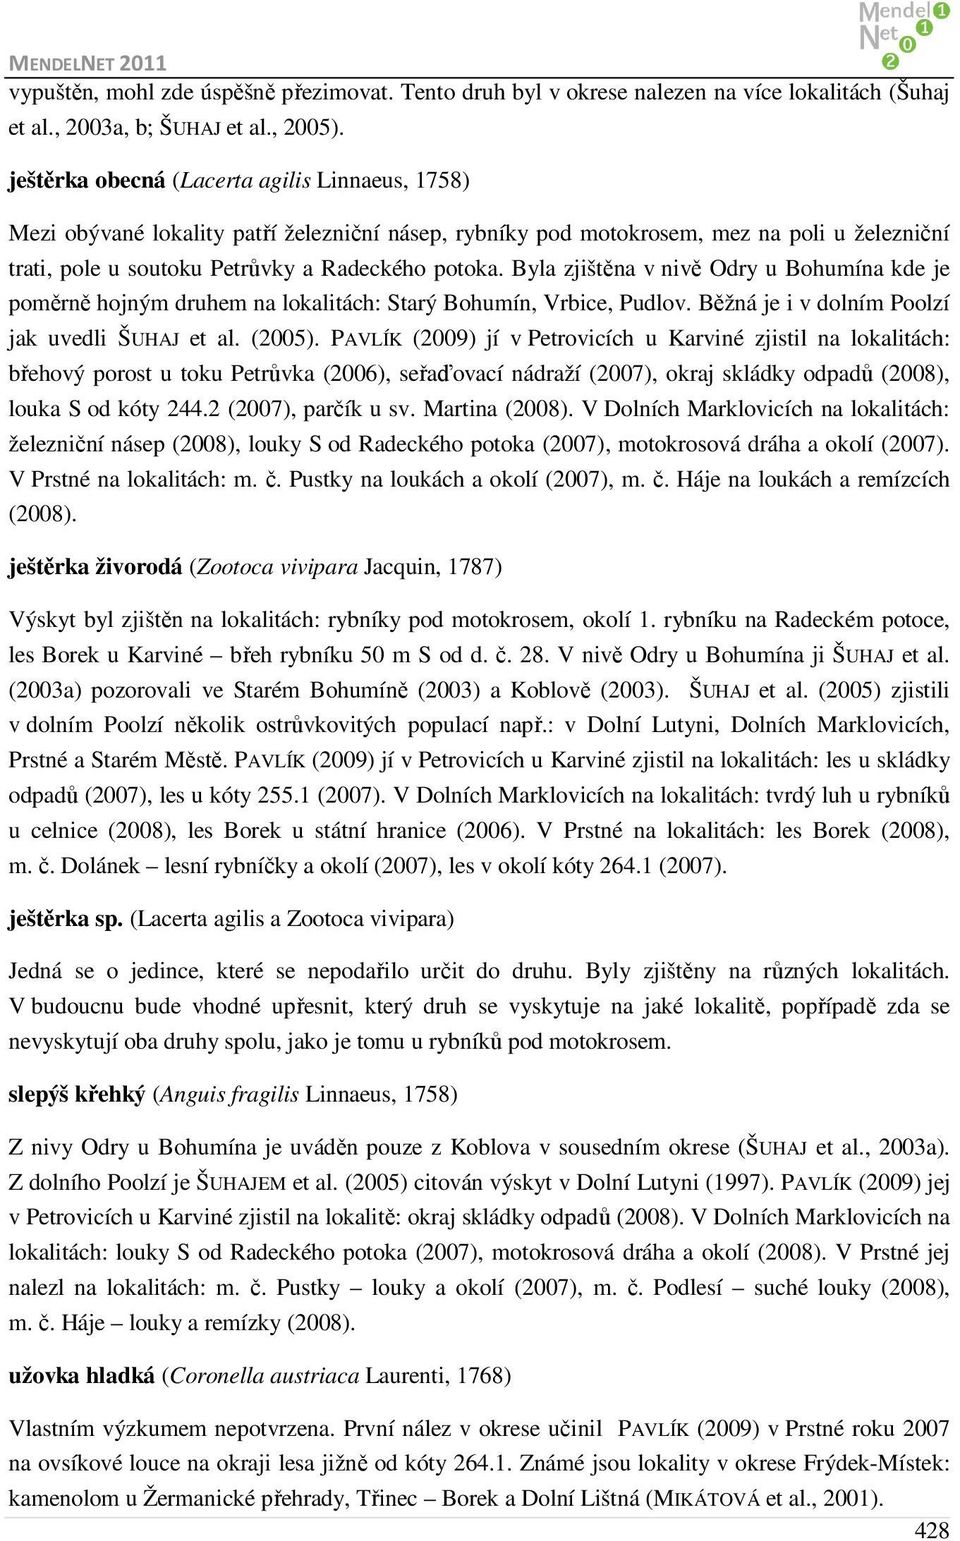 Byla zjištěna v nivě Odry u Bohumína kde je poměrně hojným druhem na lokalitách: Starý Bohumín, Vrbice, Pudlov. Běžná je i v dolním Poolzí jak uvedli ŠUHAJ et al. (2005).